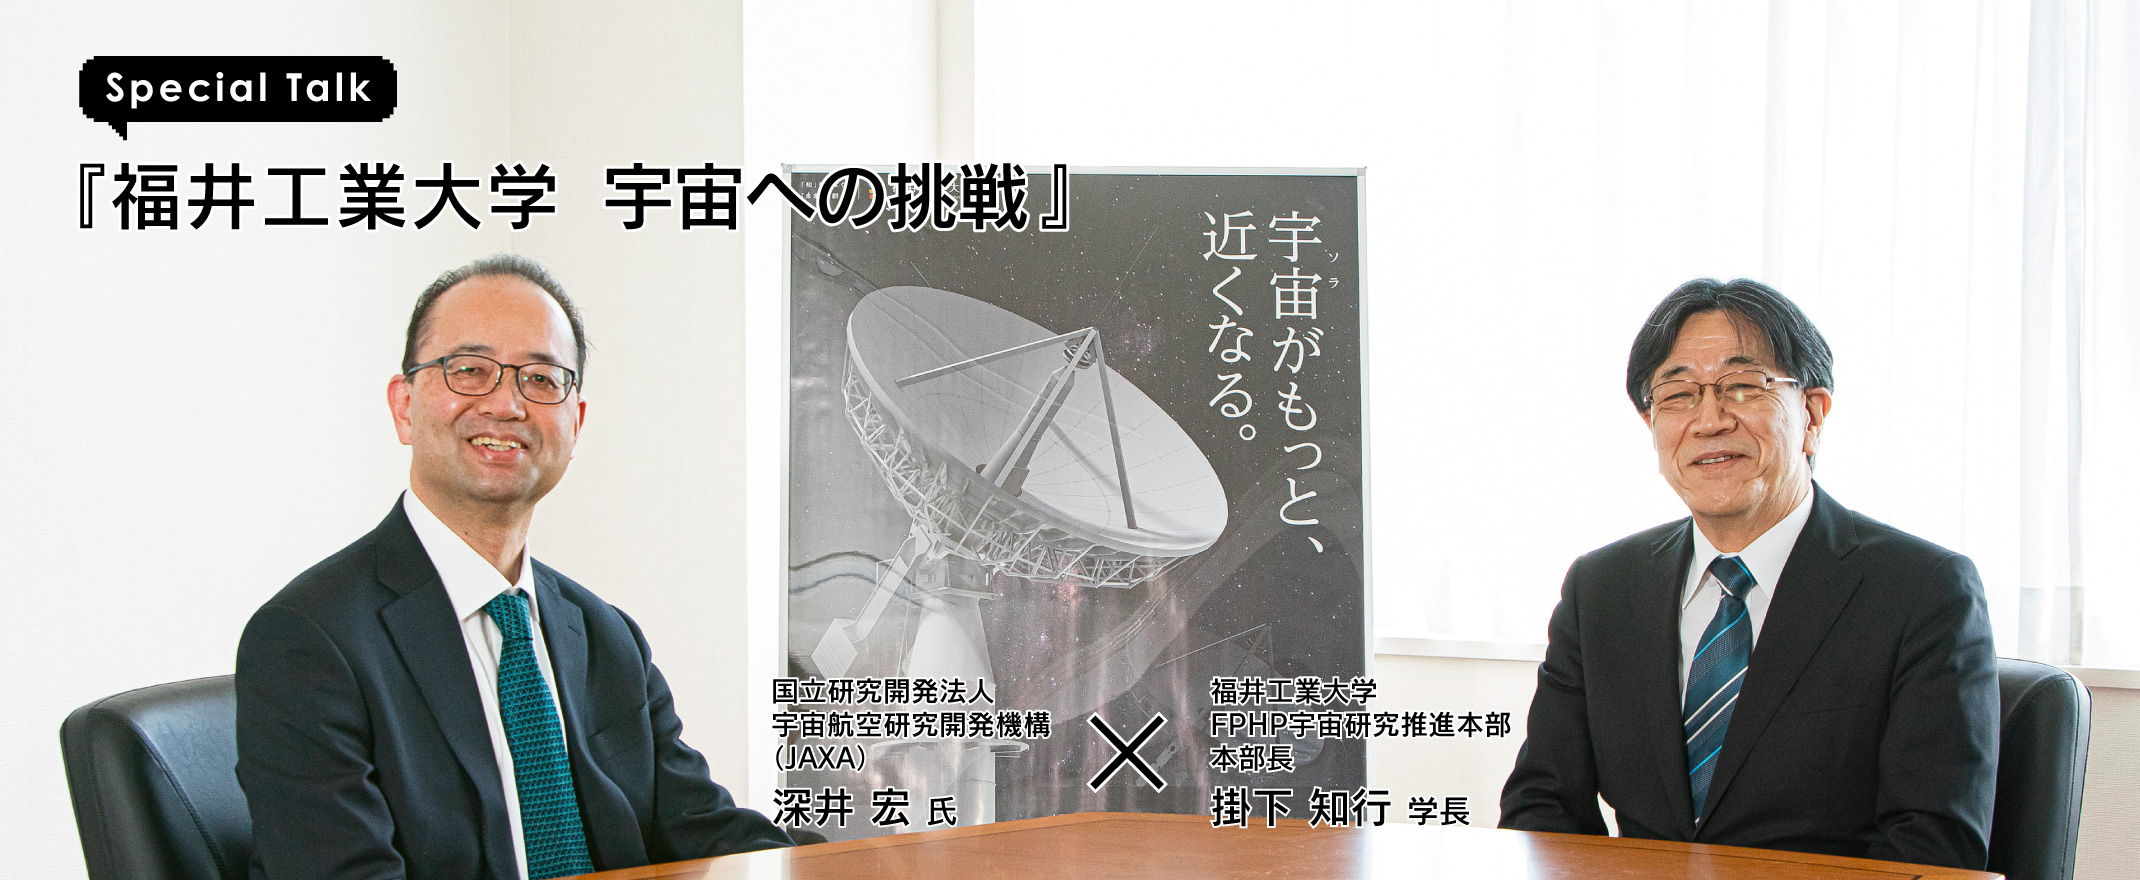 特別対談『福井工業大学 宇宙への挑戦』